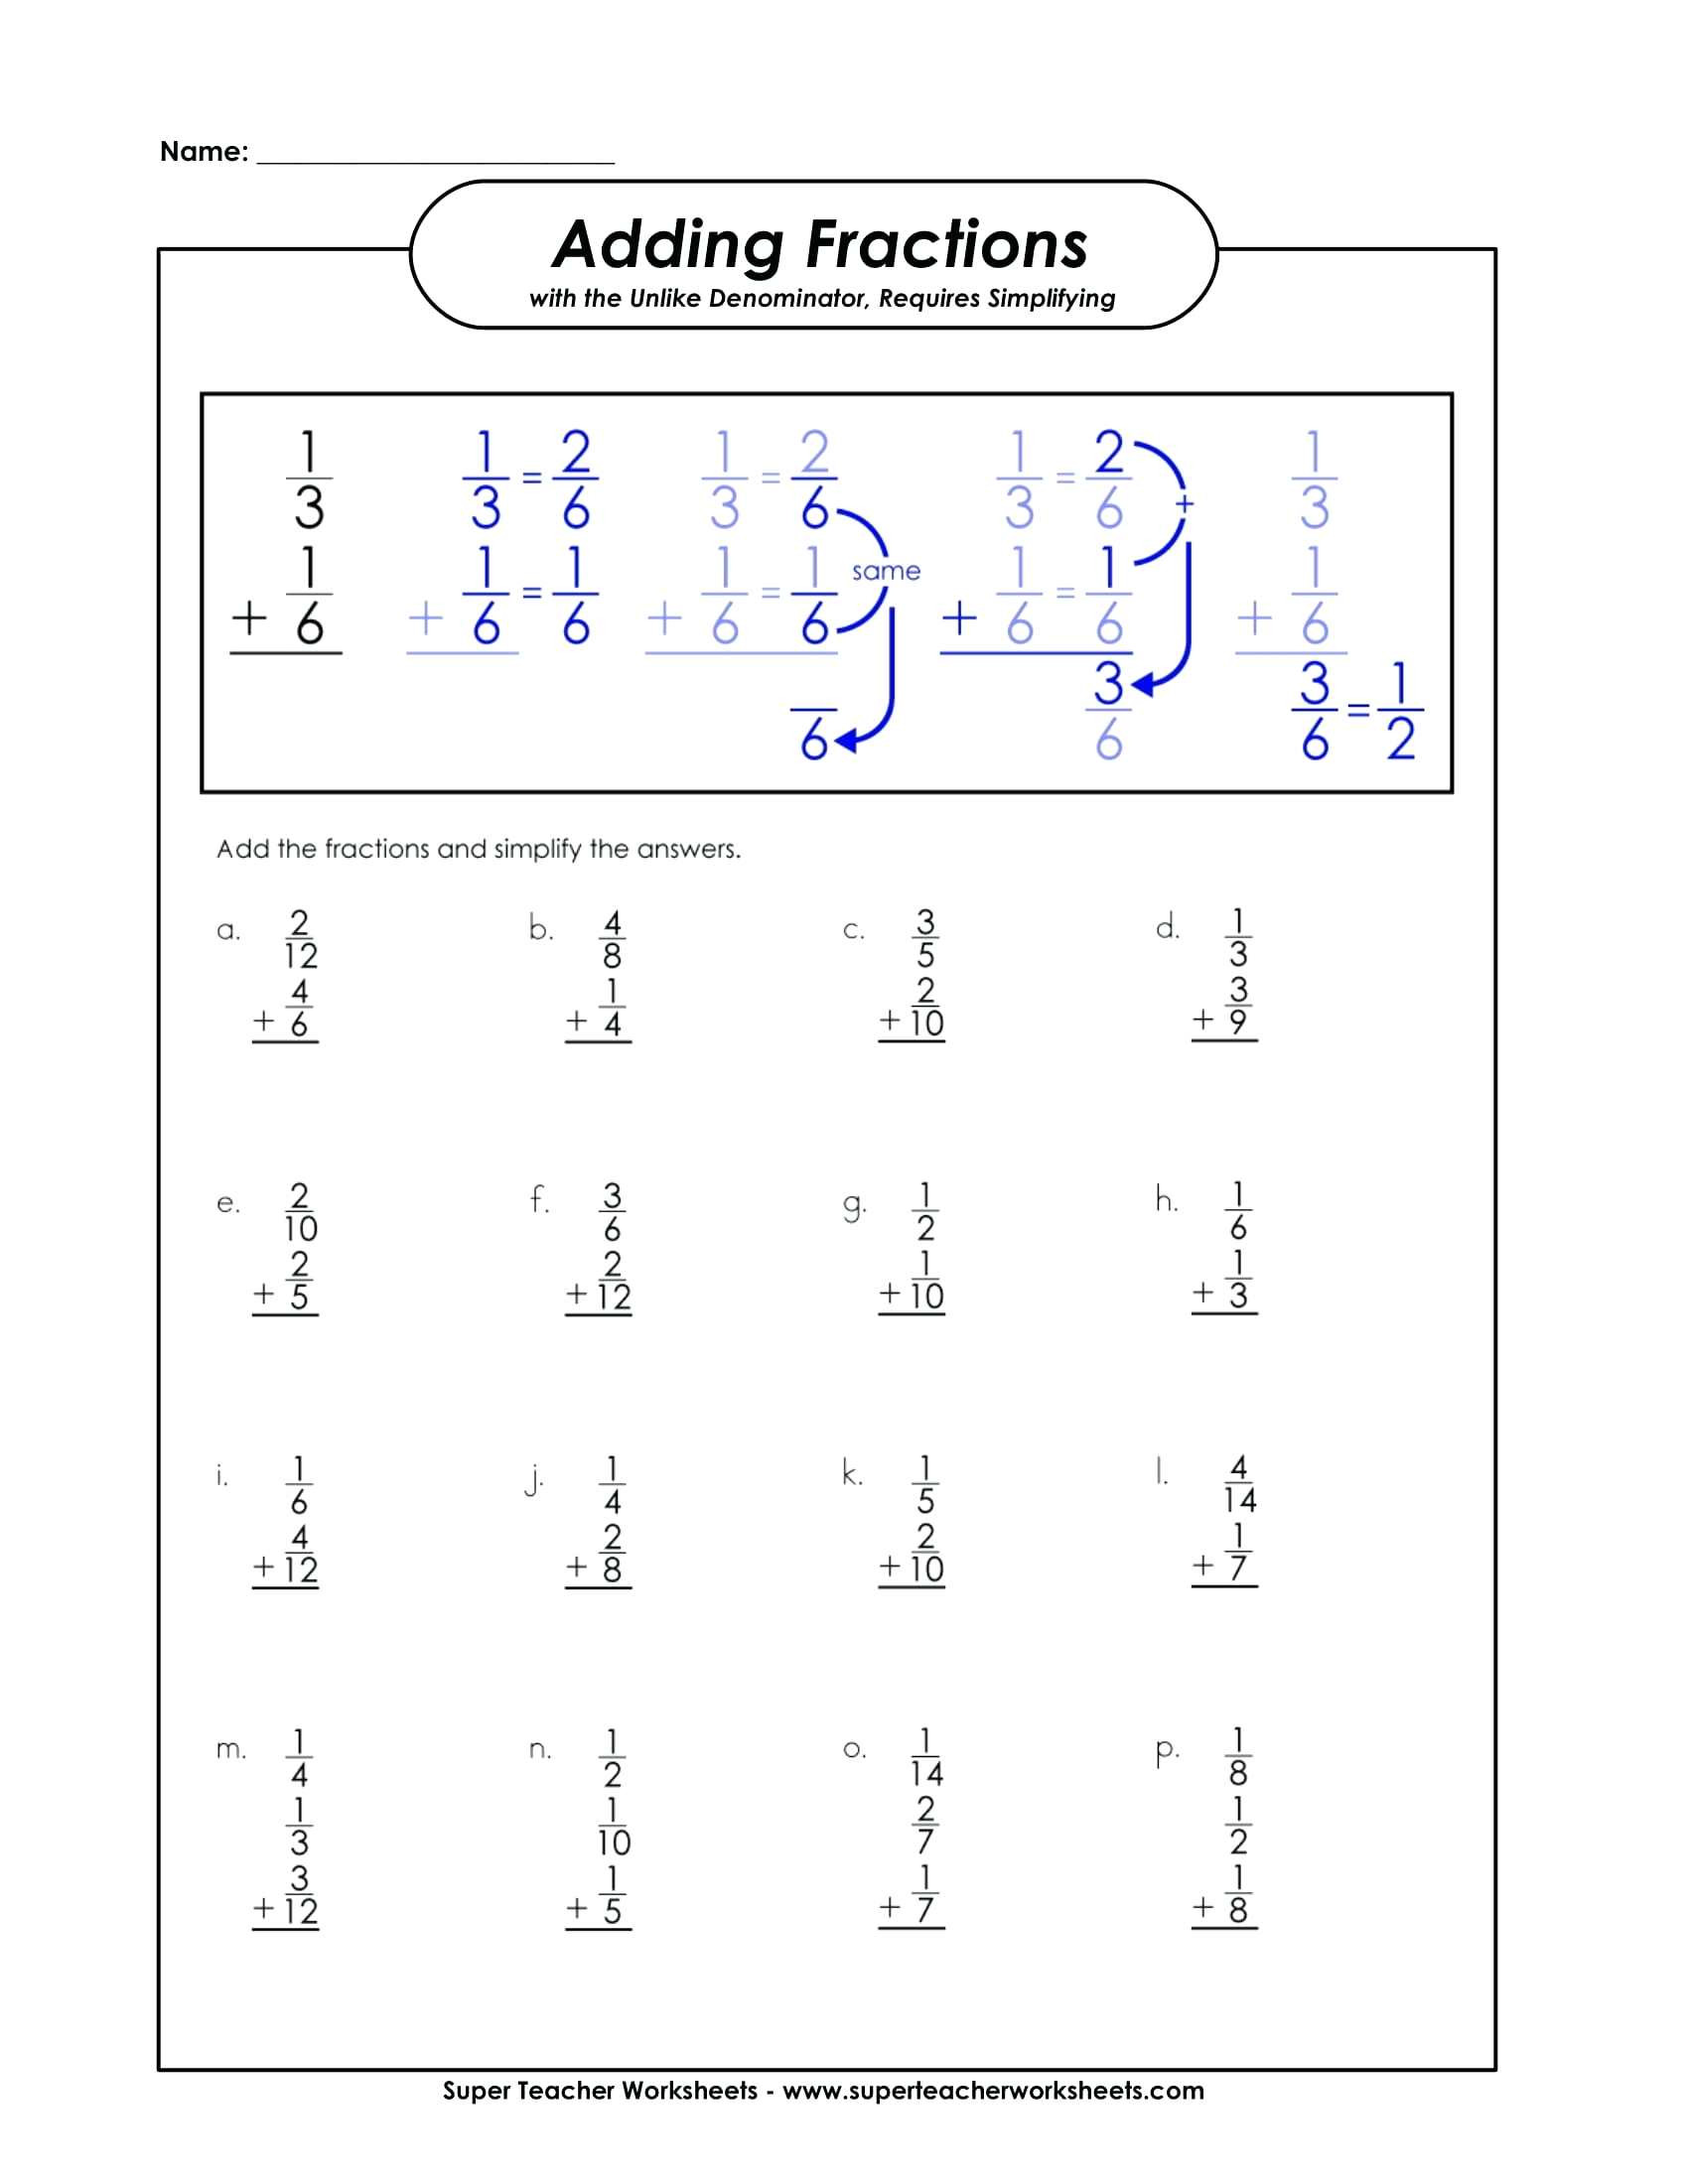 Adding Fractions Worksheet Pdf Adding Fractions Worksheet Super Teacher Worksheets